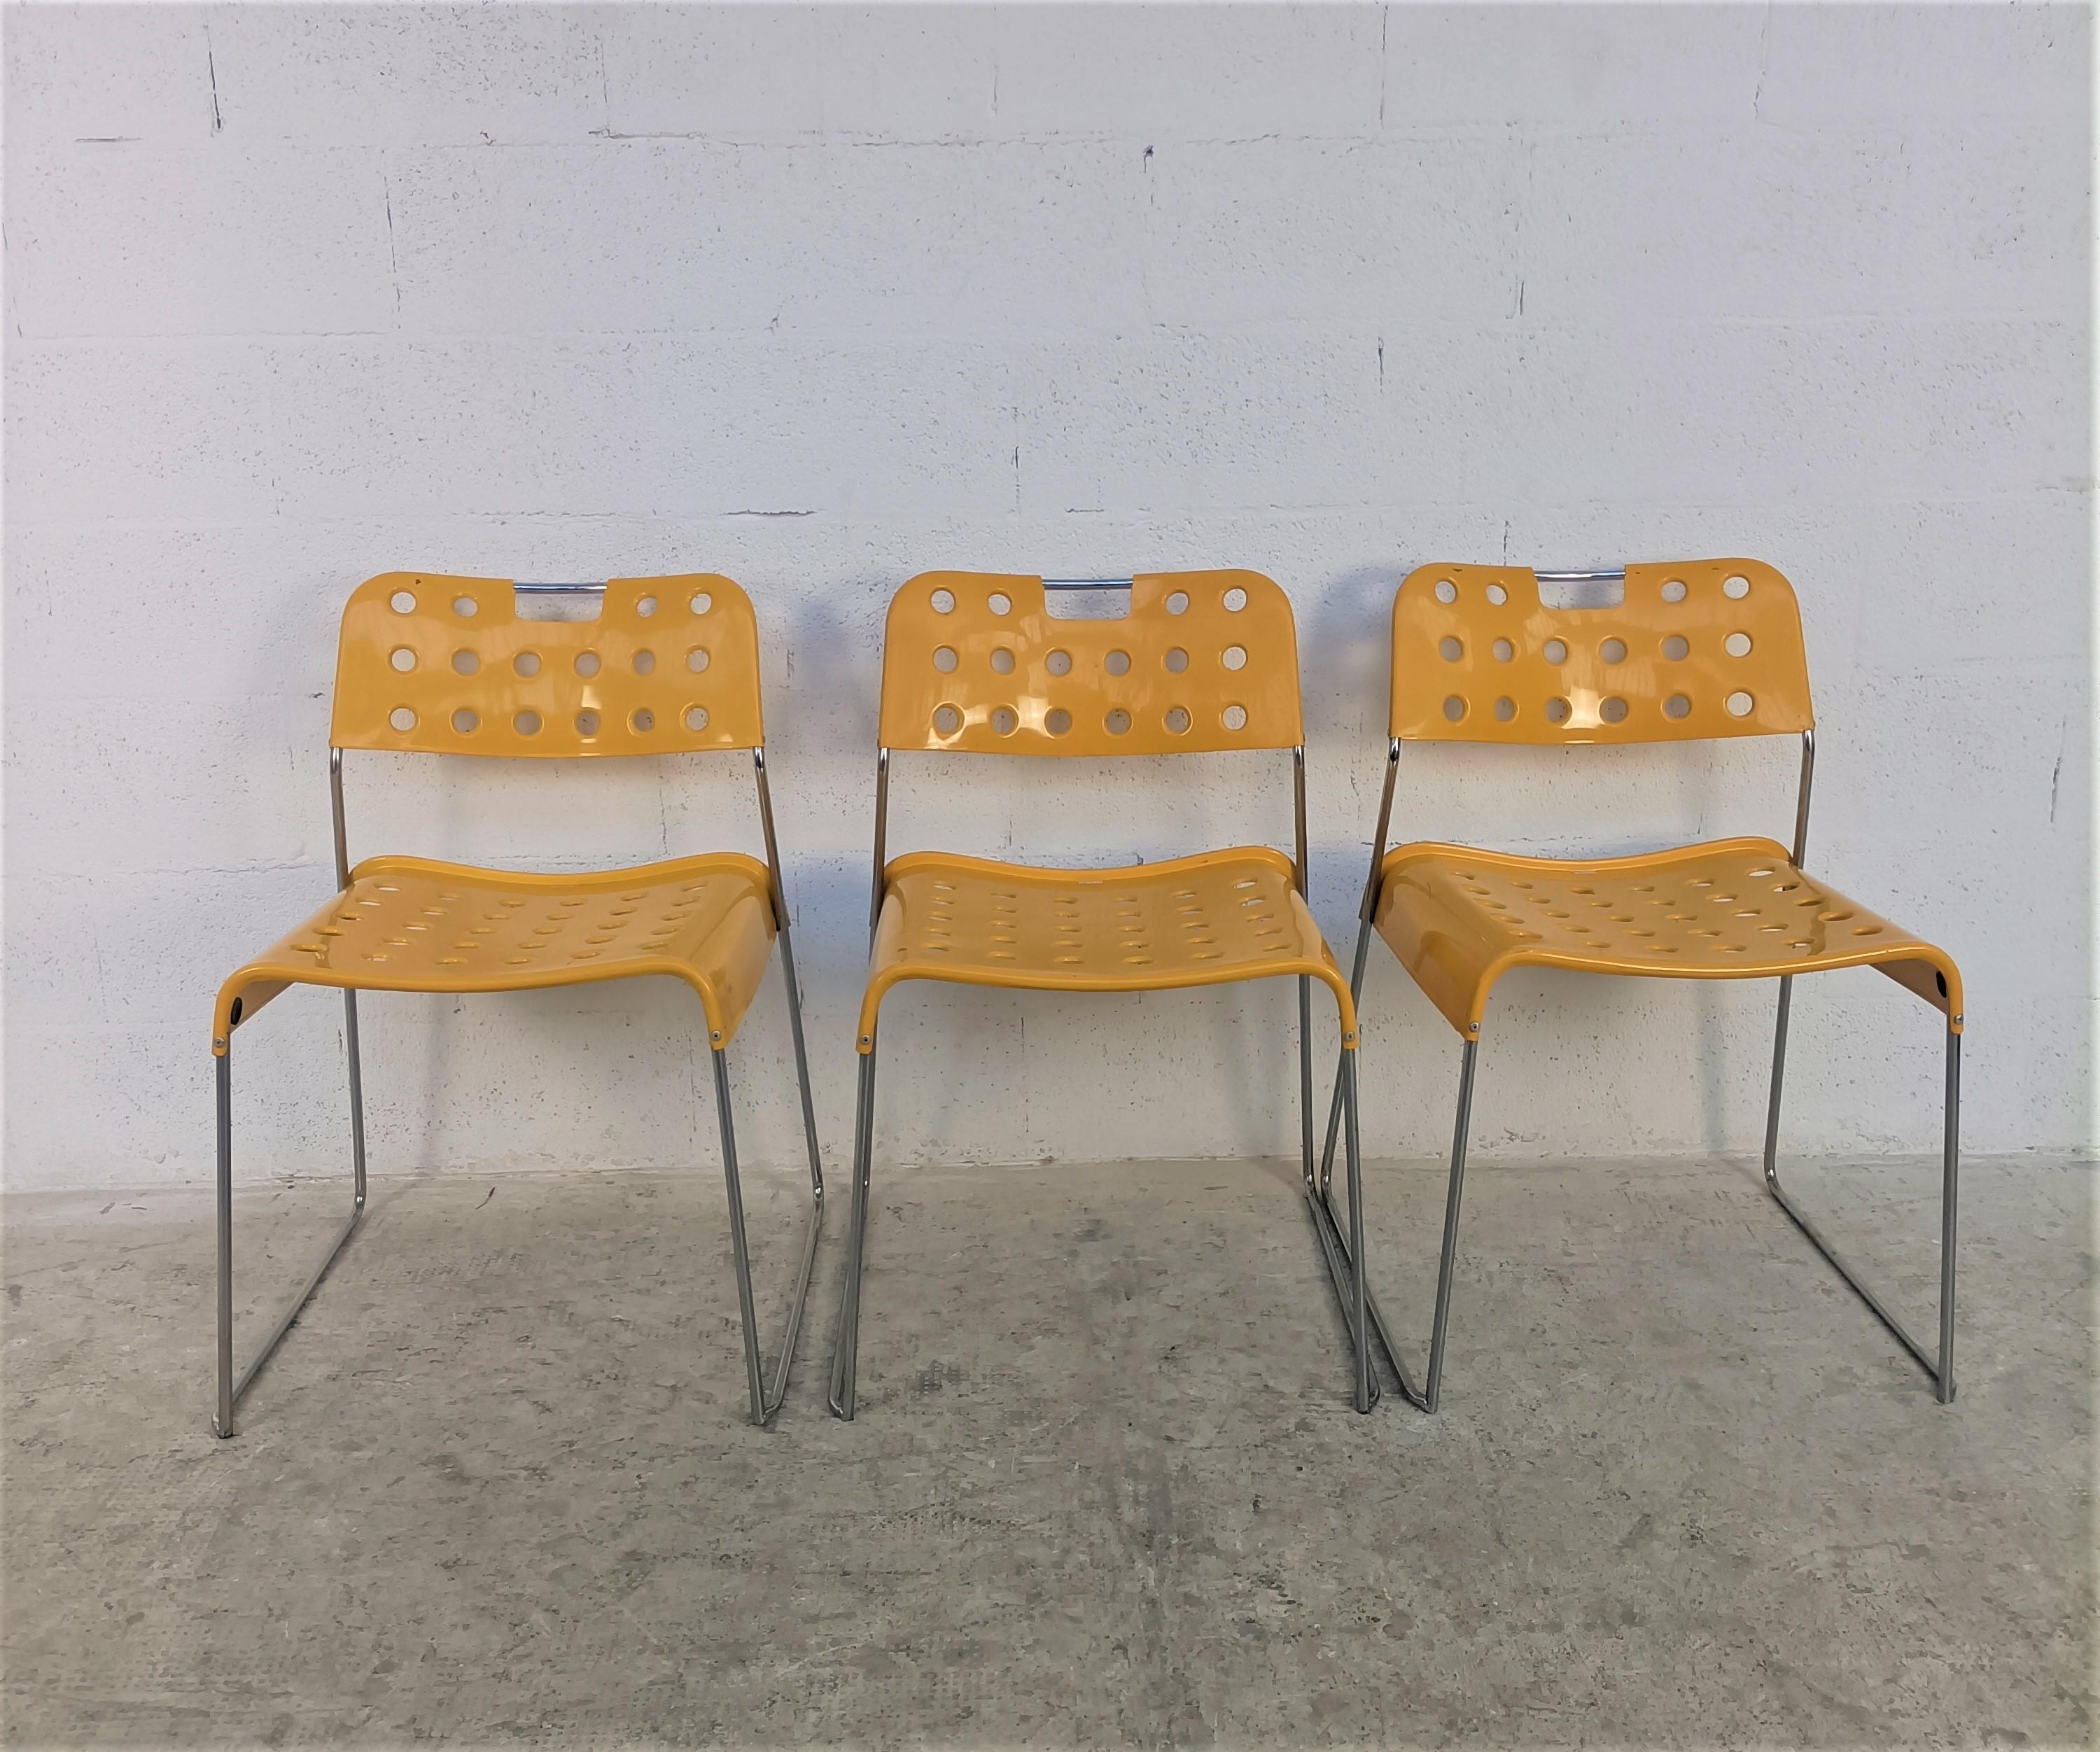 3 gelbe stapelbare Omkstak-Stühle von Rodney Kinsman für Bieffeplast, 70er-Jahre (Moderne der Mitte des Jahrhunderts)